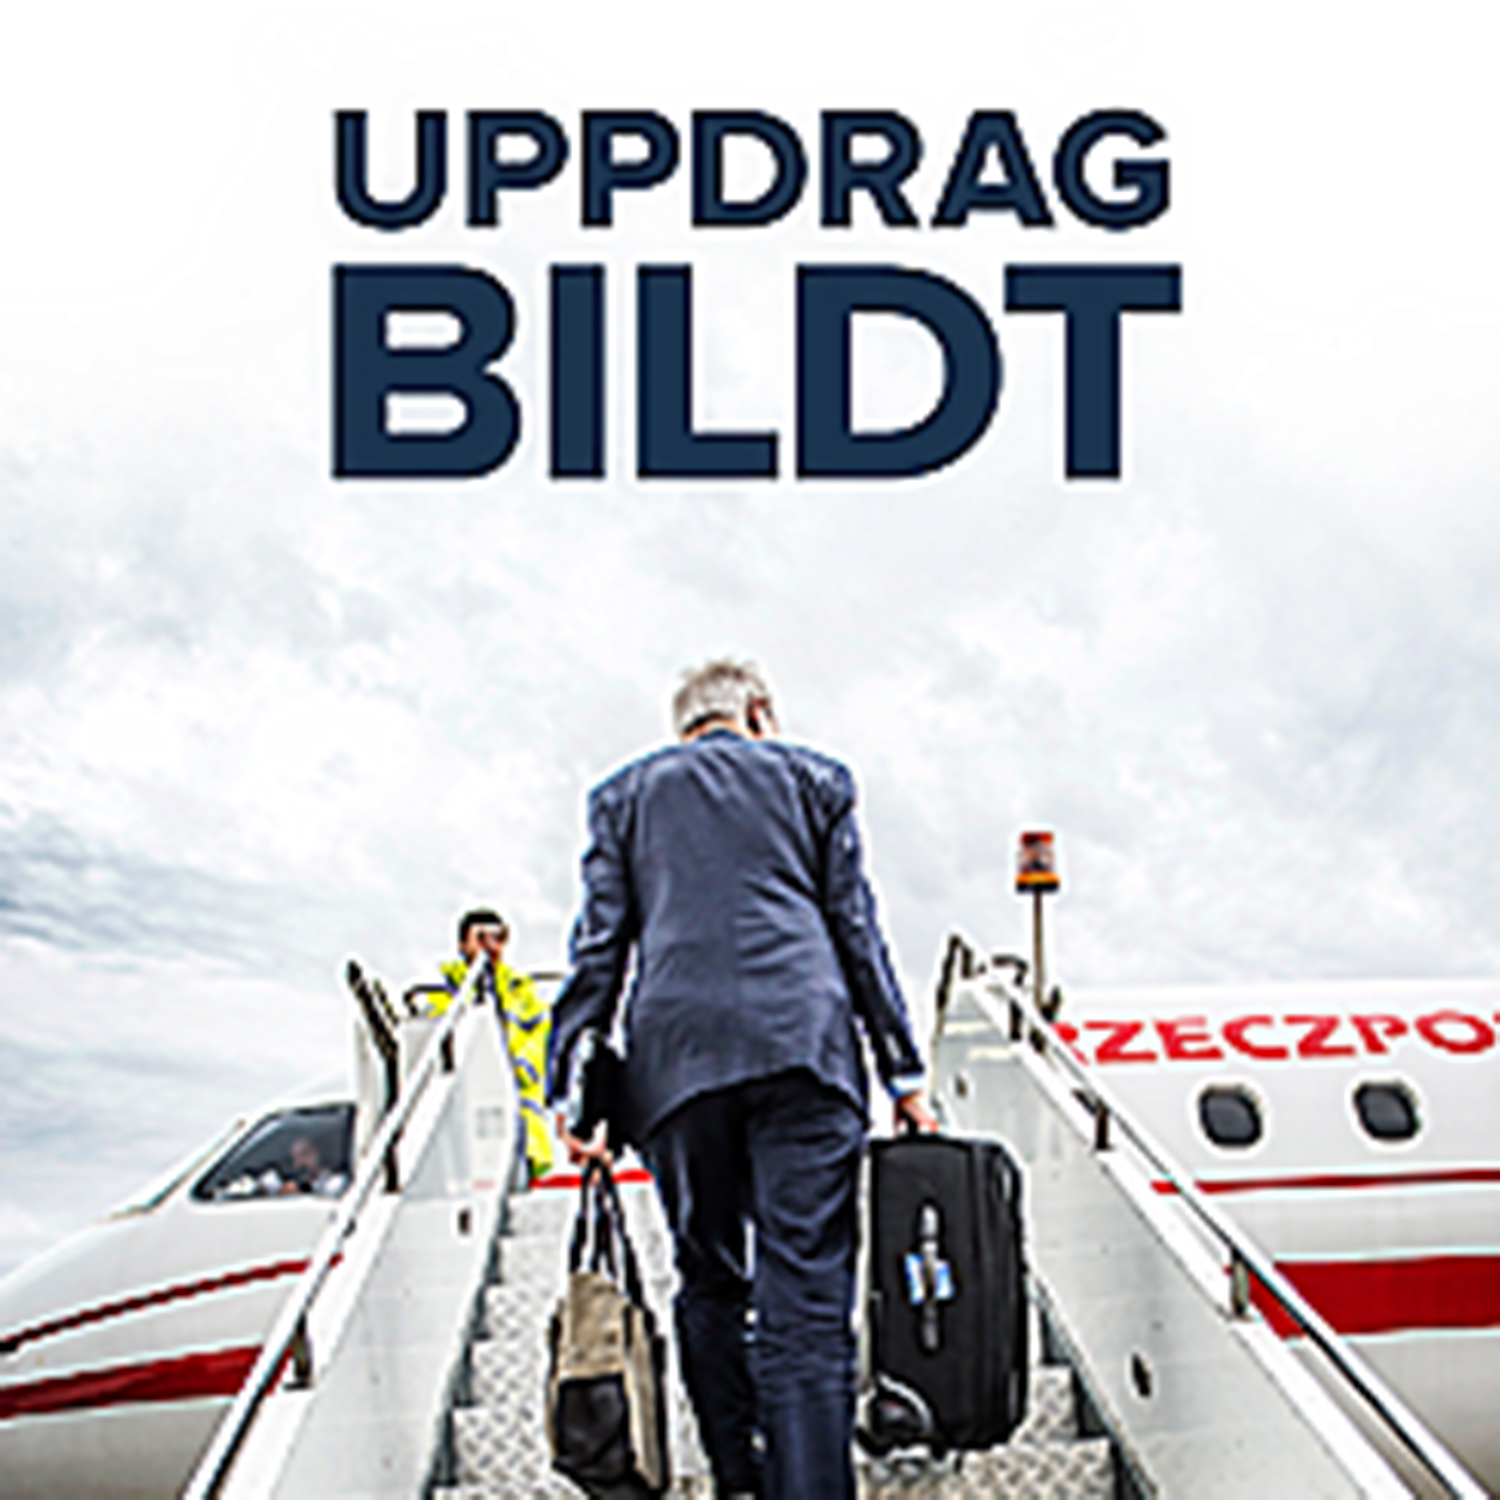 Uppdrag Bildt ges ut av Norstedts förlag och släpps i efter sommaren.